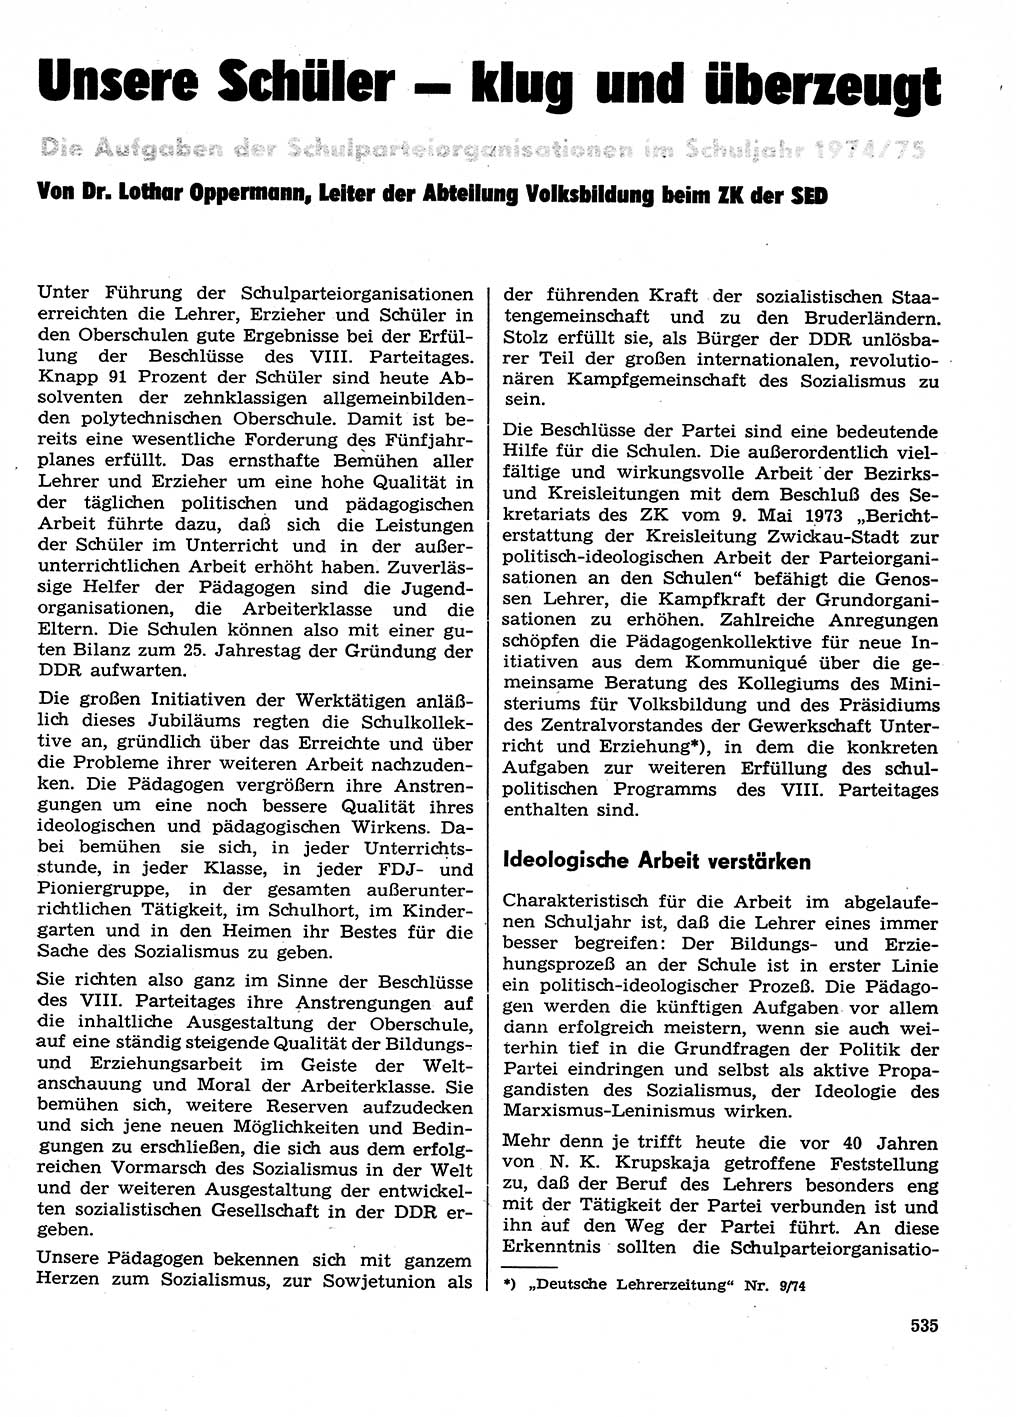 Neuer Weg (NW), Organ des Zentralkomitees (ZK) der SED (Sozialistische Einheitspartei Deutschlands) für Fragen des Parteilebens, 29. Jahrgang [Deutsche Demokratische Republik (DDR)] 1974, Seite 535 (NW ZK SED DDR 1974, S. 535)